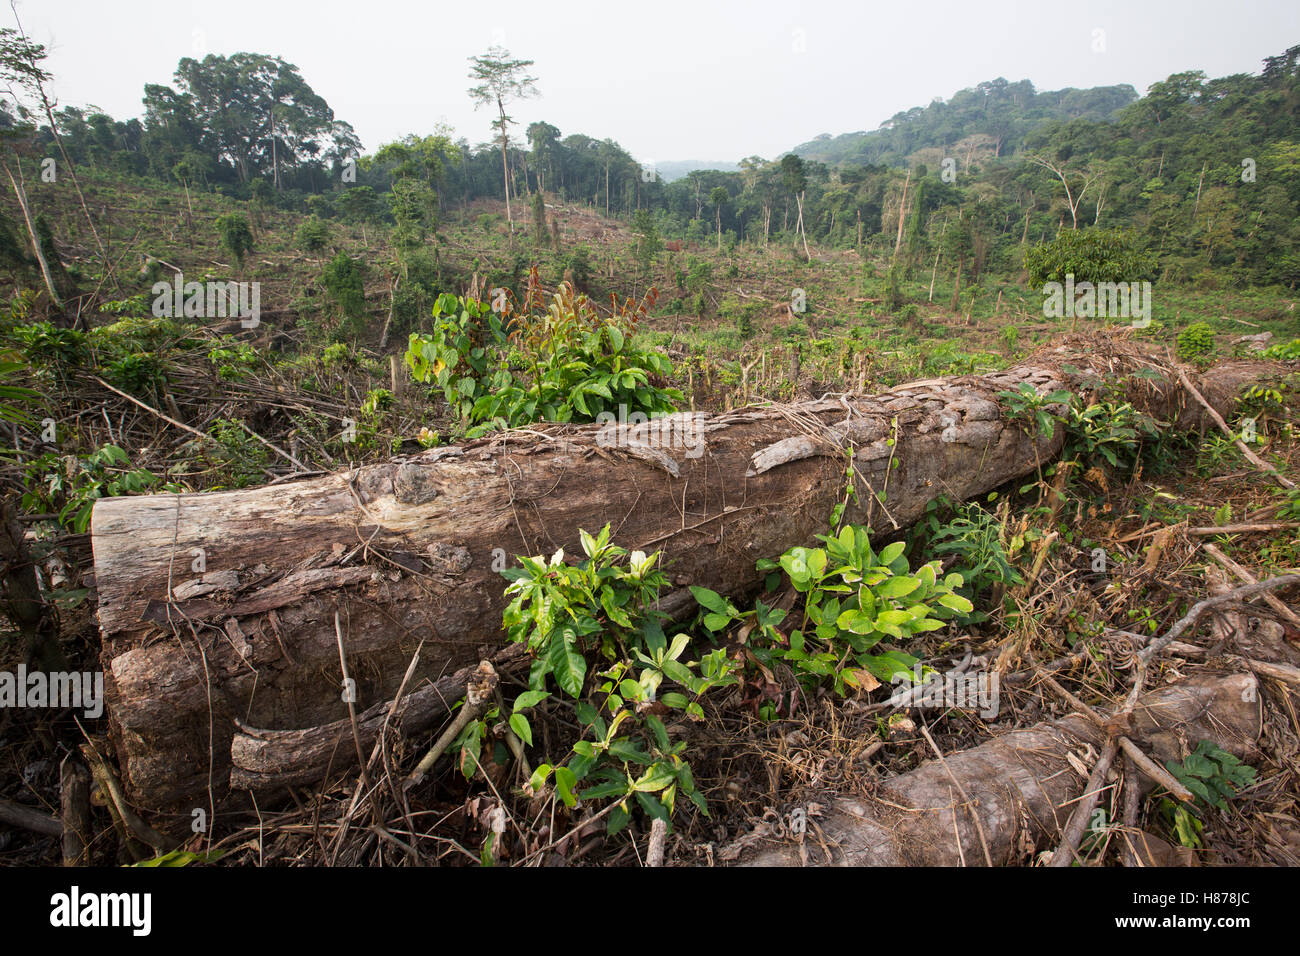 Regenwald klar geschnitten für Ölpalmen-Plantage, Kamerun Stockfoto